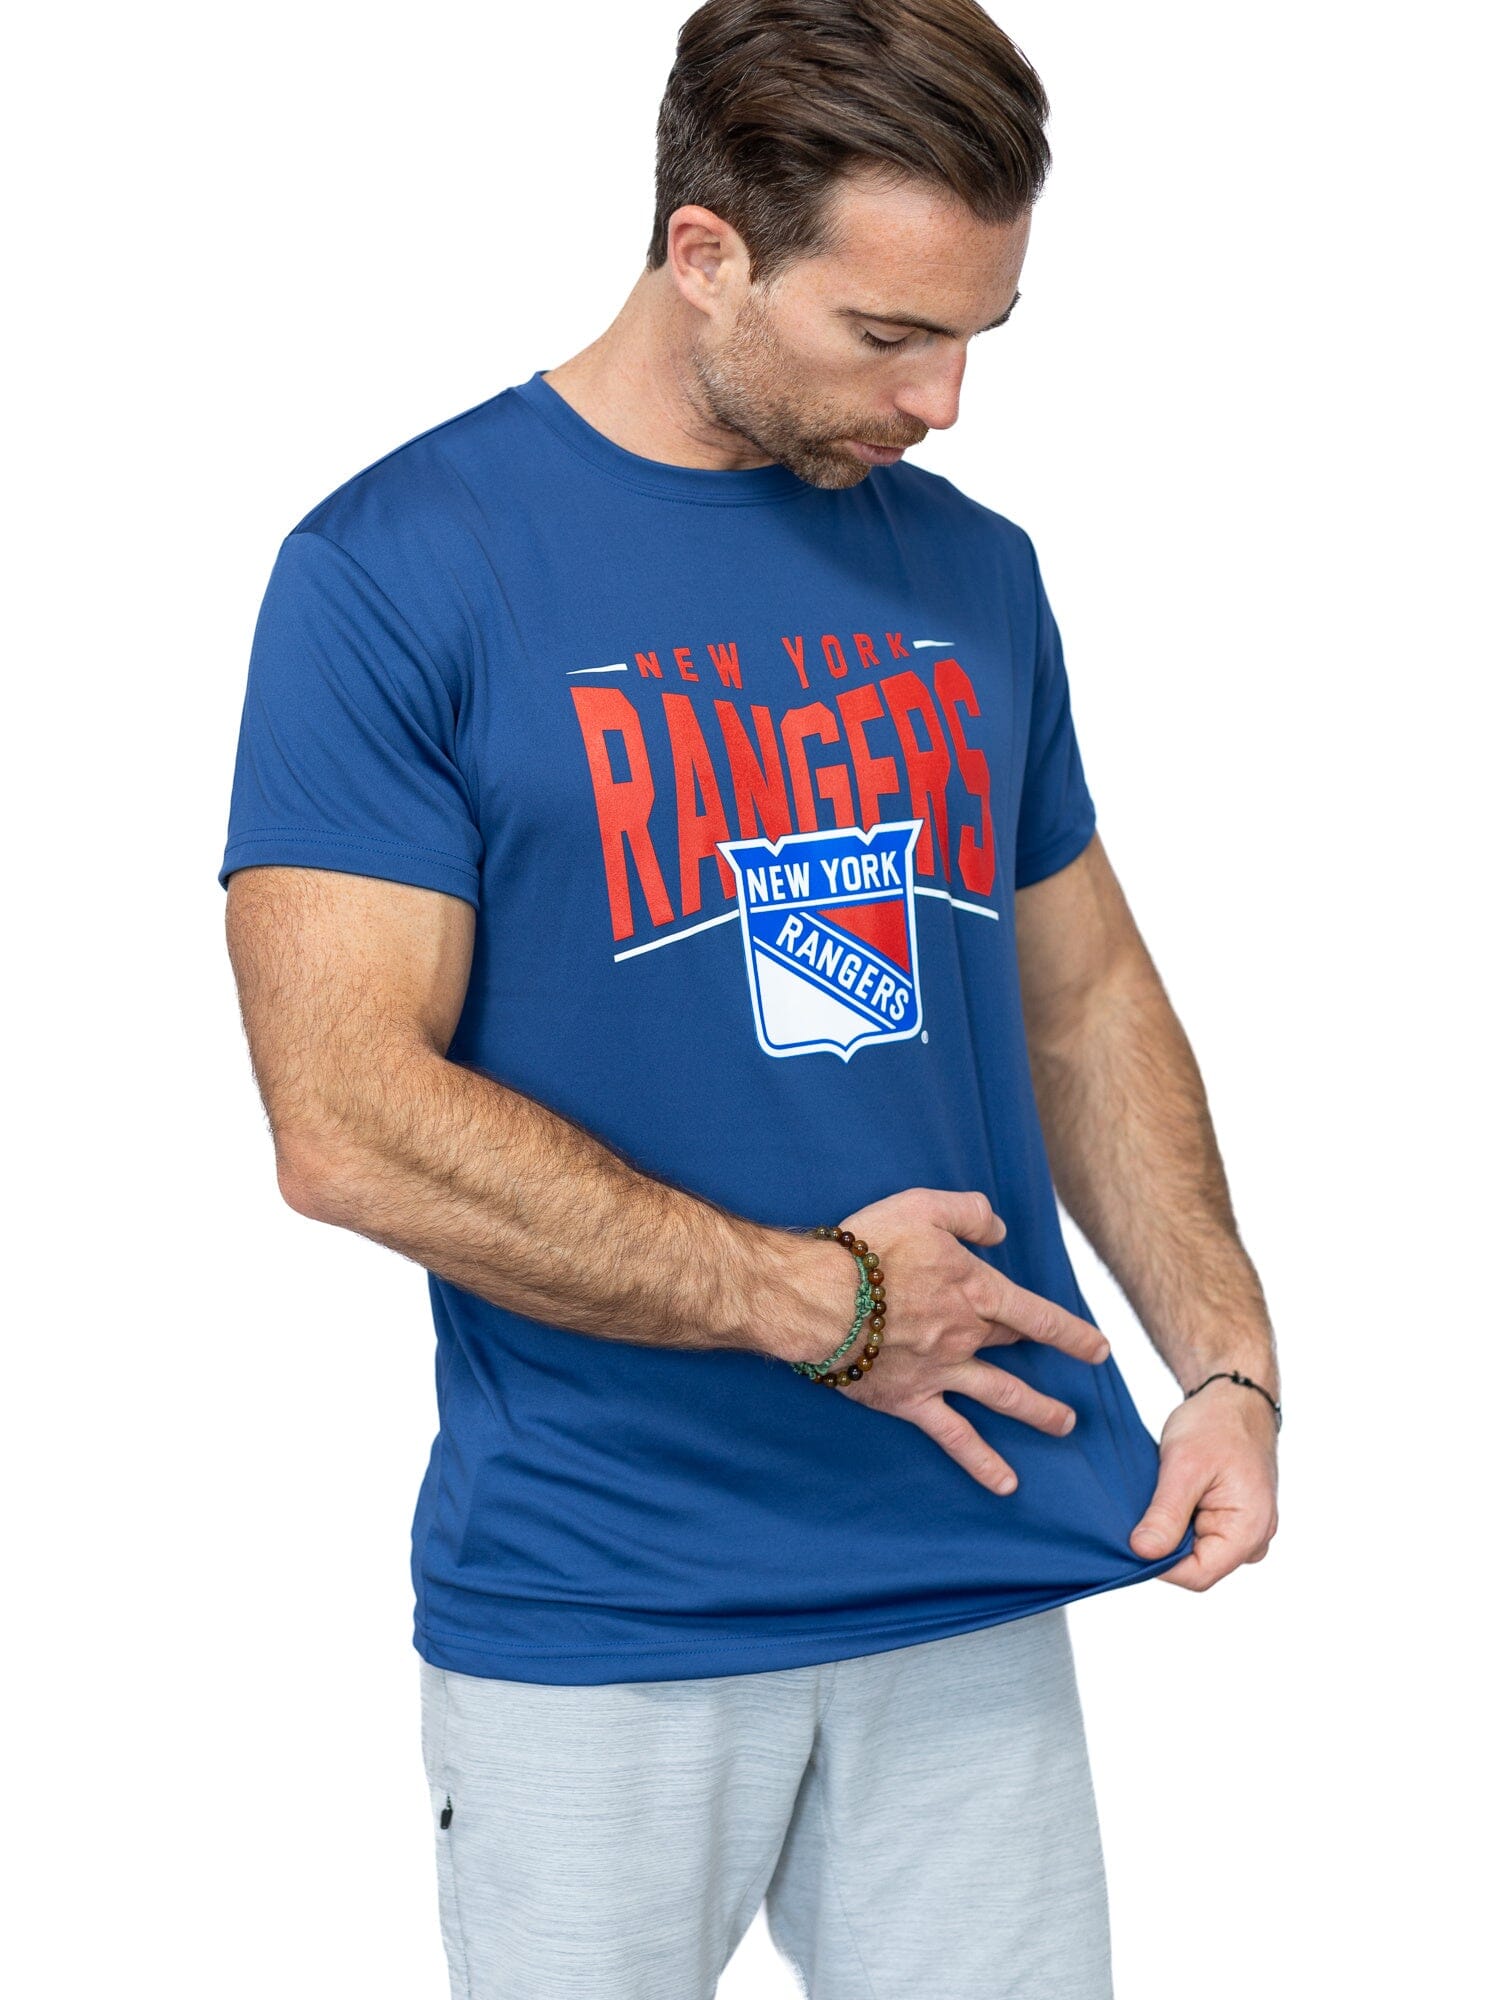 New York Rangers "Full Fandom" Moisture Wicking T-Shirt - Front 2